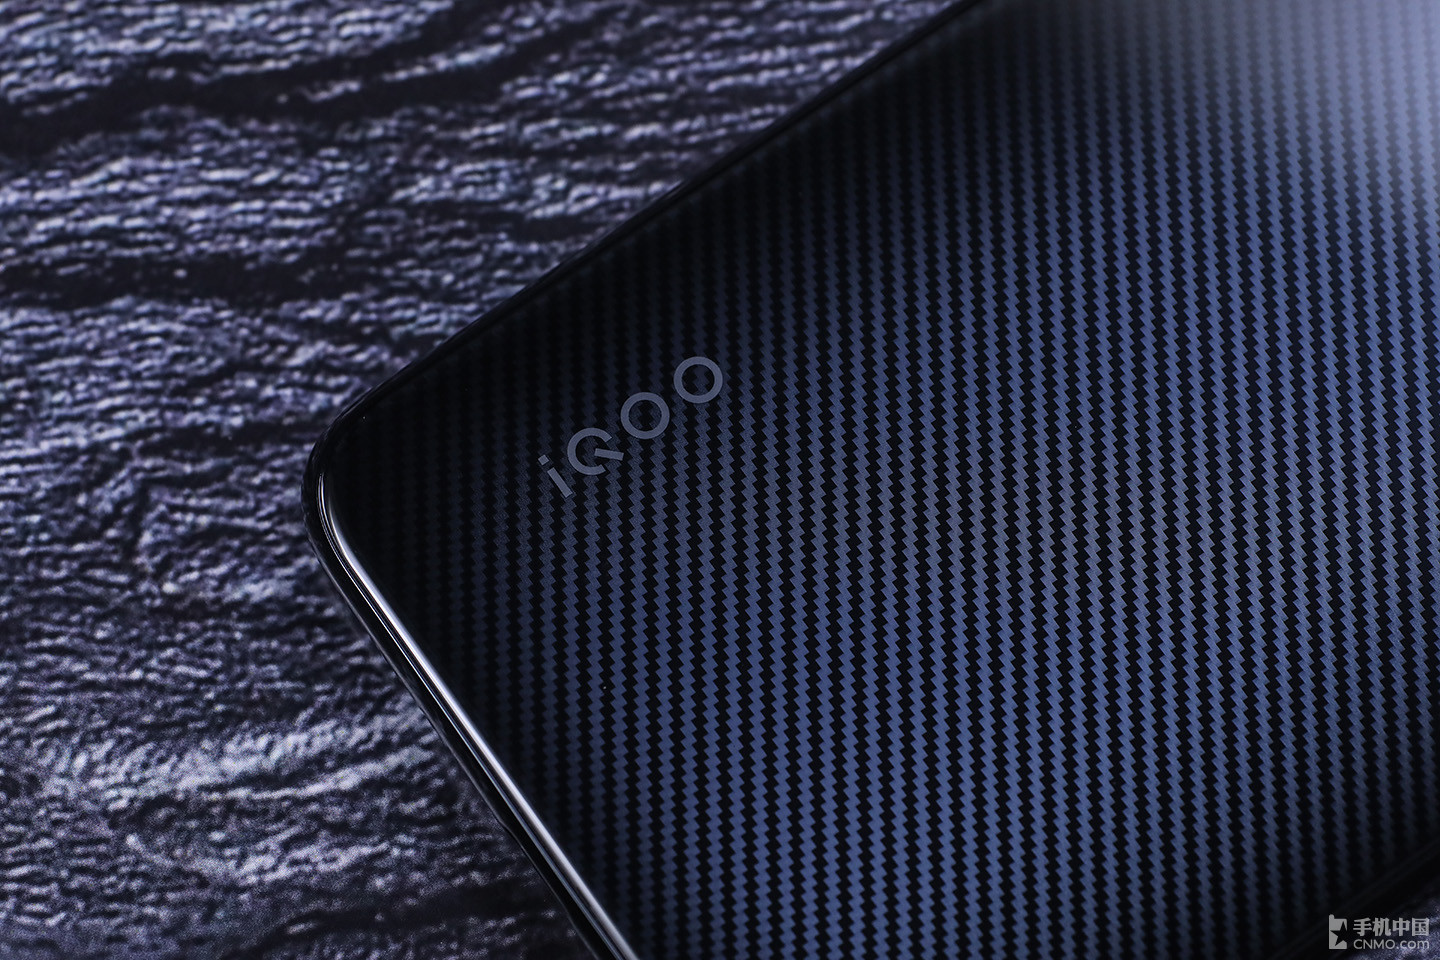 Vivo ra mắt gaming
phone  IQOO Neo cấu hình khủng, giá rẻ: Snapdragon 845, RAM
từ 6GB, pin 4500mAh, sạc nhanh 22.5W